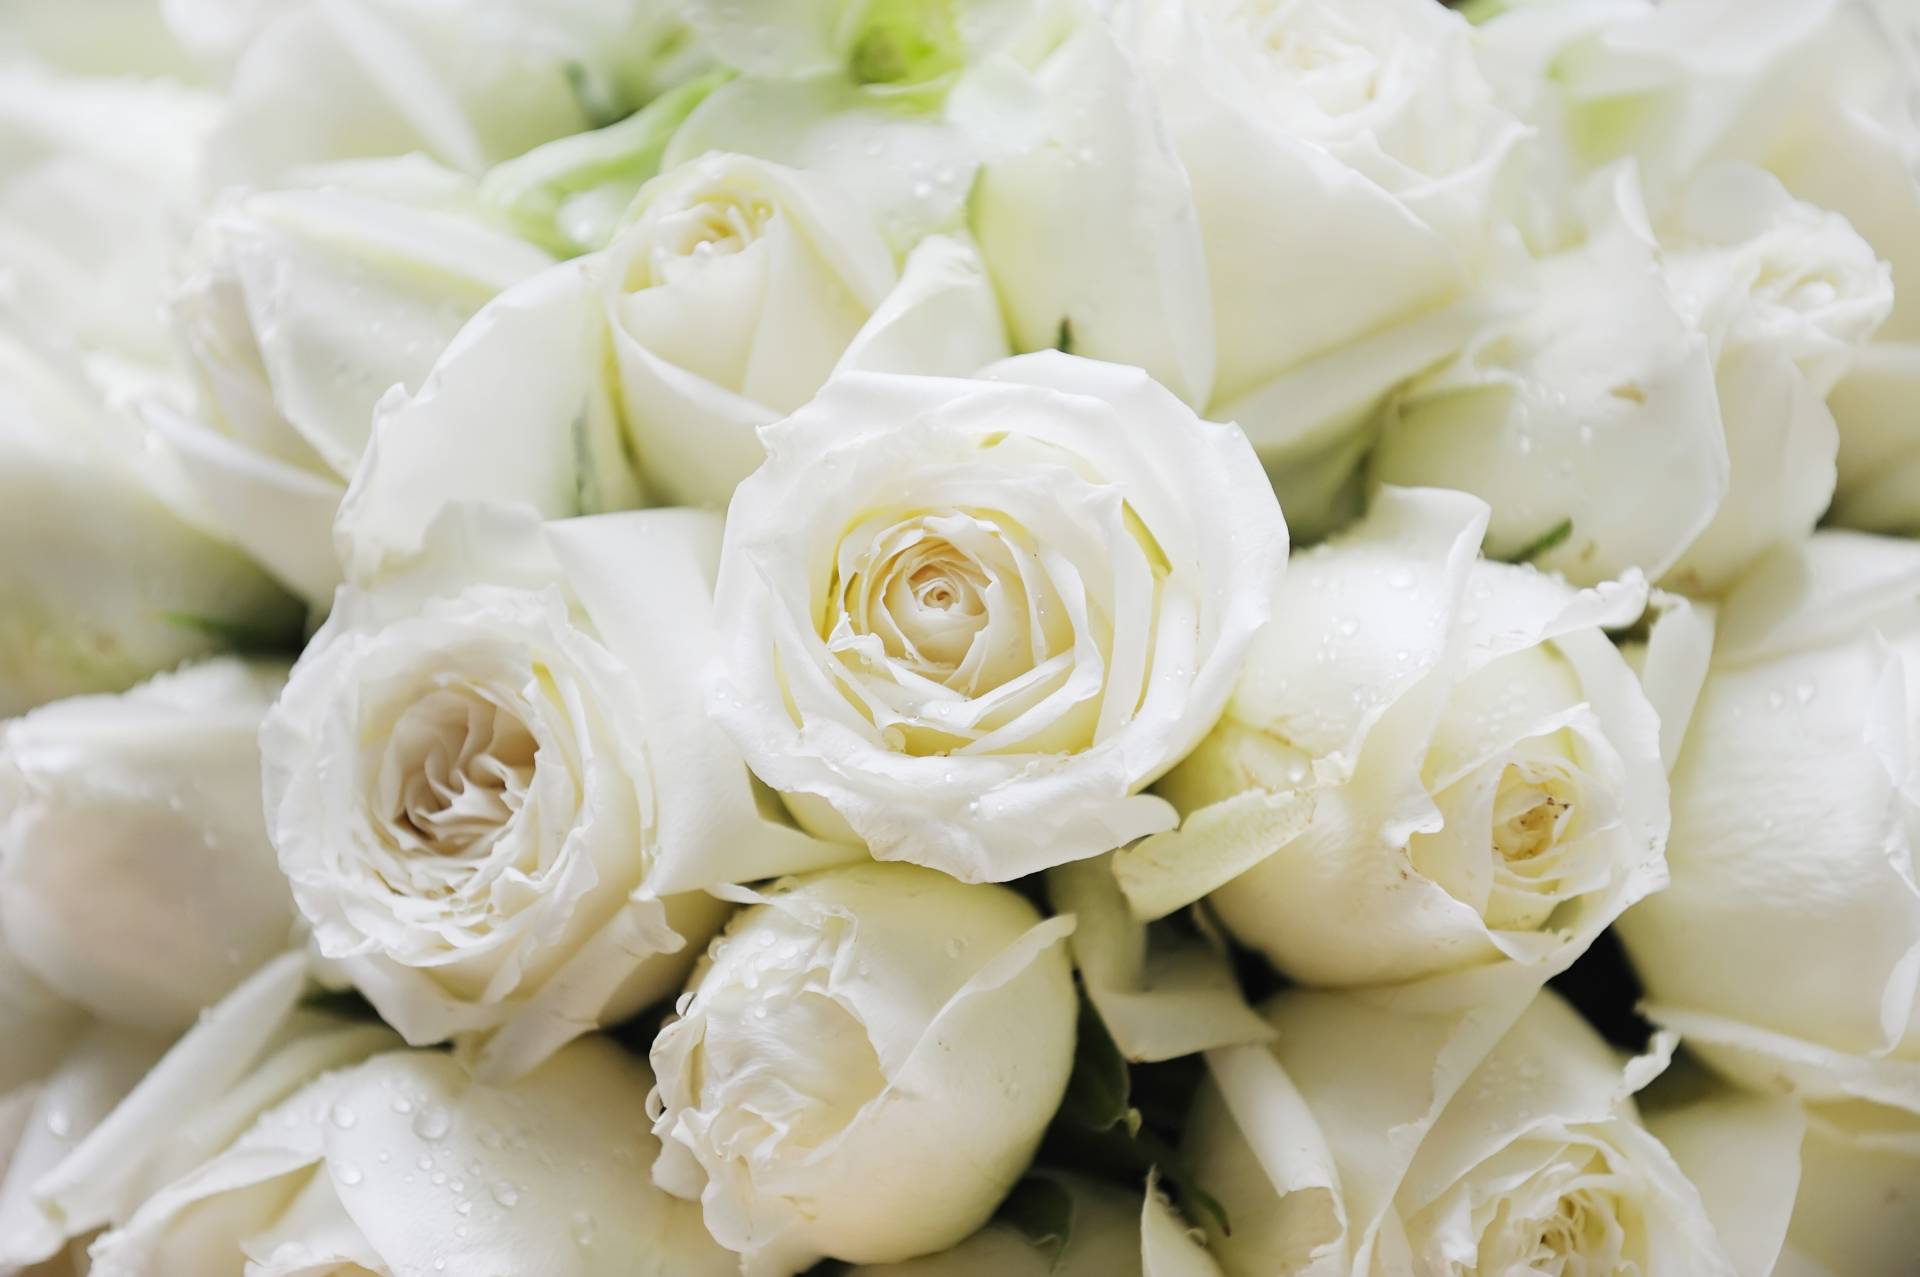 Papermoon Fototapete "White Roses" von Papermoon